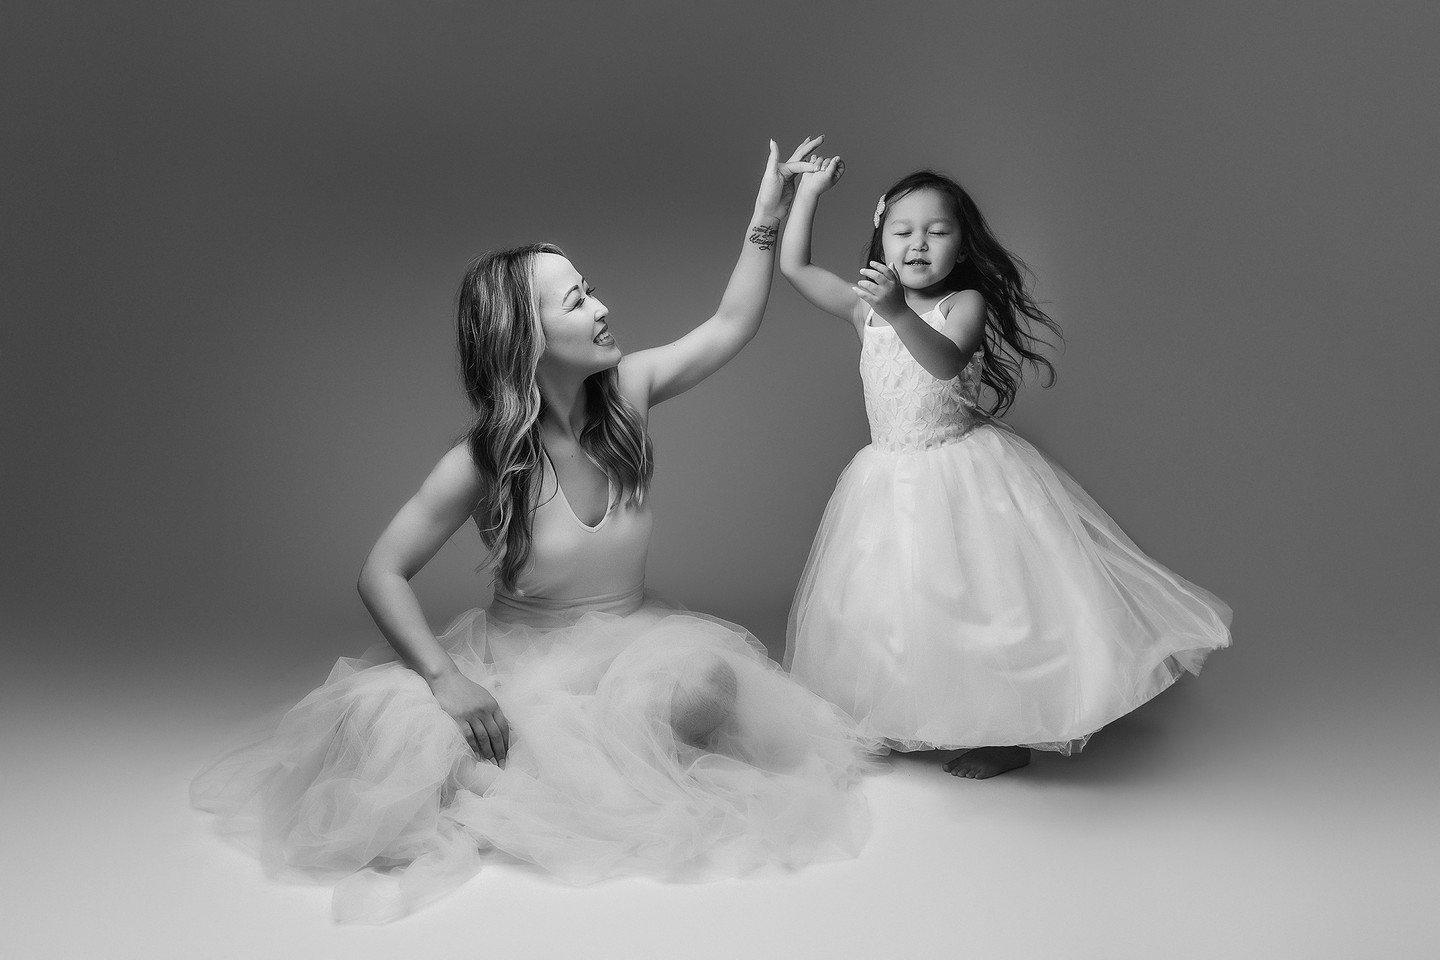 You're never too old to put a tutu on and dance with your little girl ❤️
#orangecountyportraitstudio #ocmotherhood #motherhoodphotography #mothersday